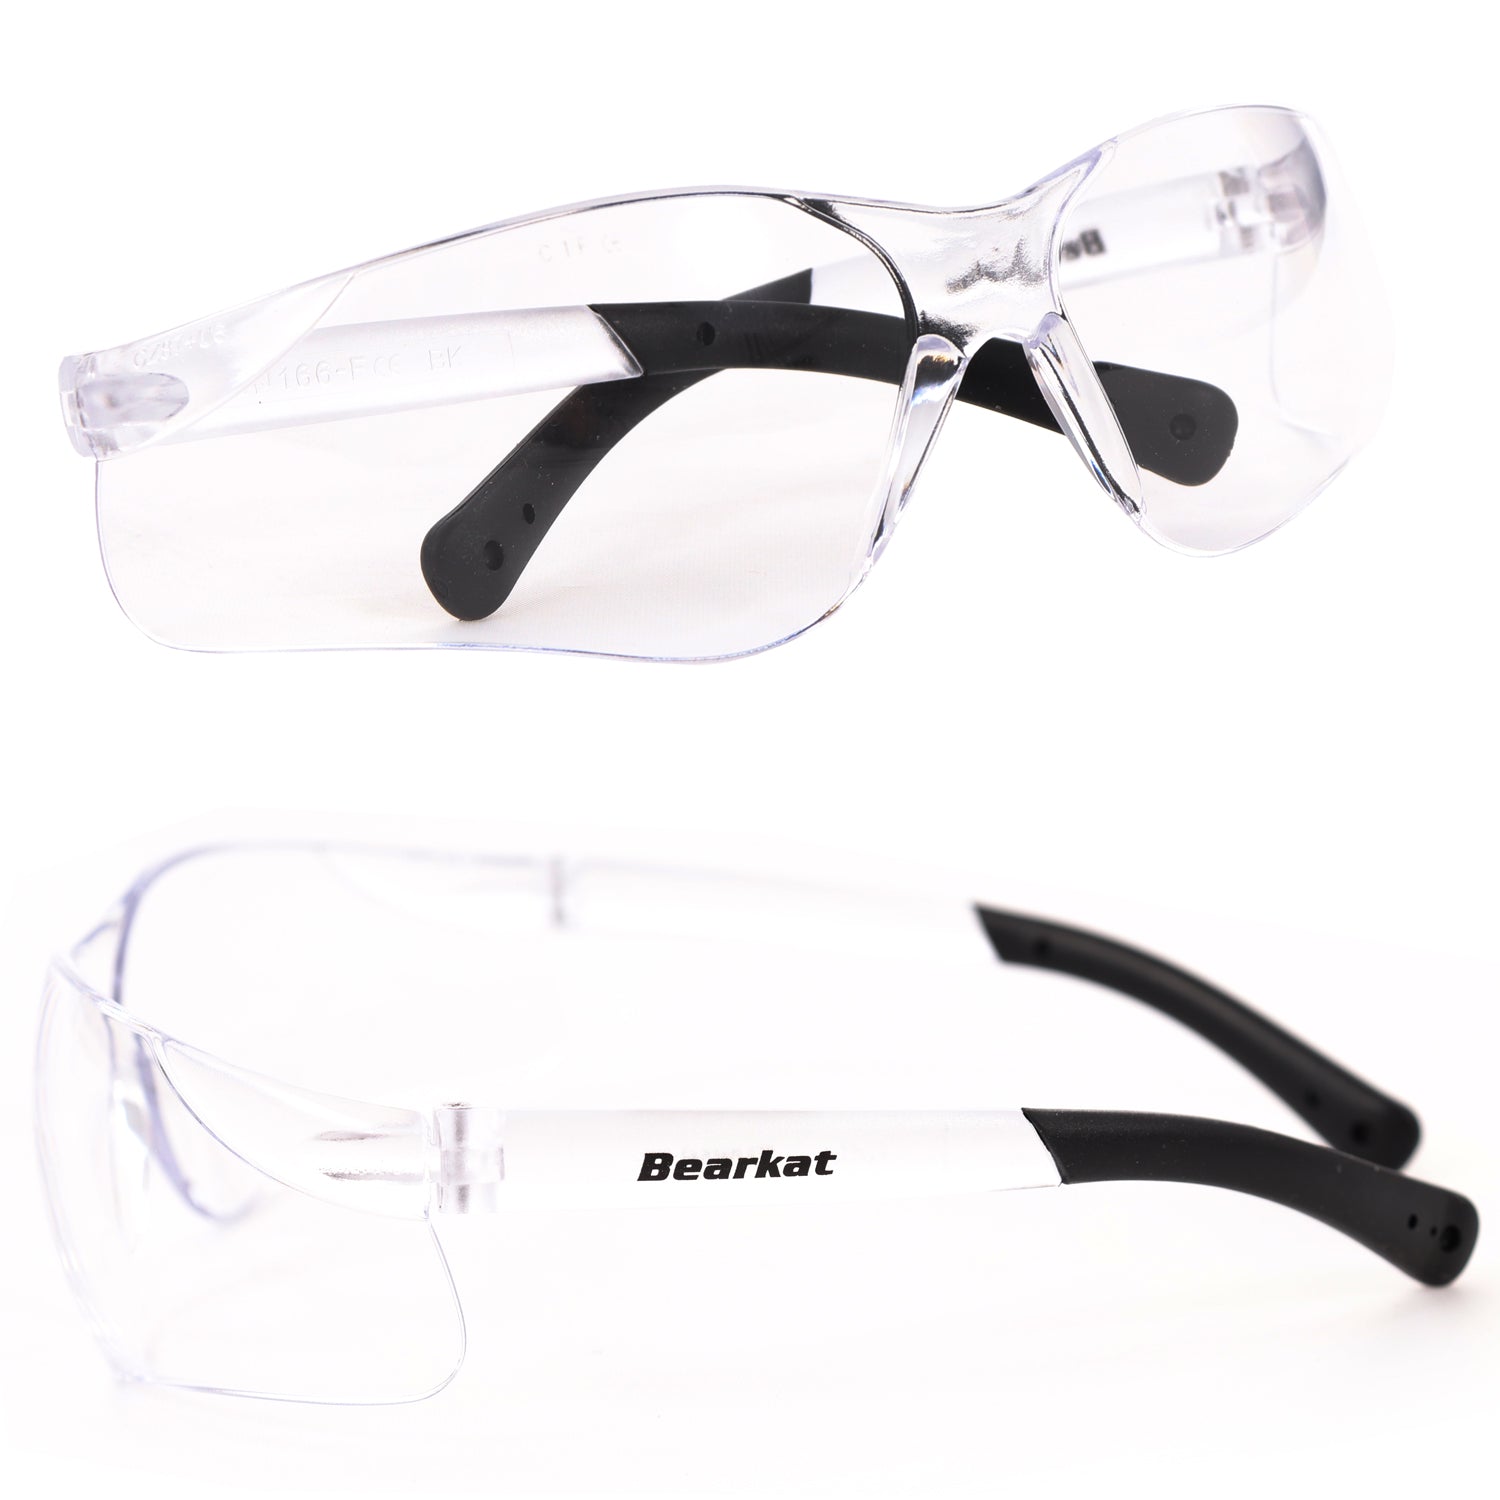 P24® Sicherheitsbrillen Klasse 1, EN166, transparent/schwarz - 10 Stück